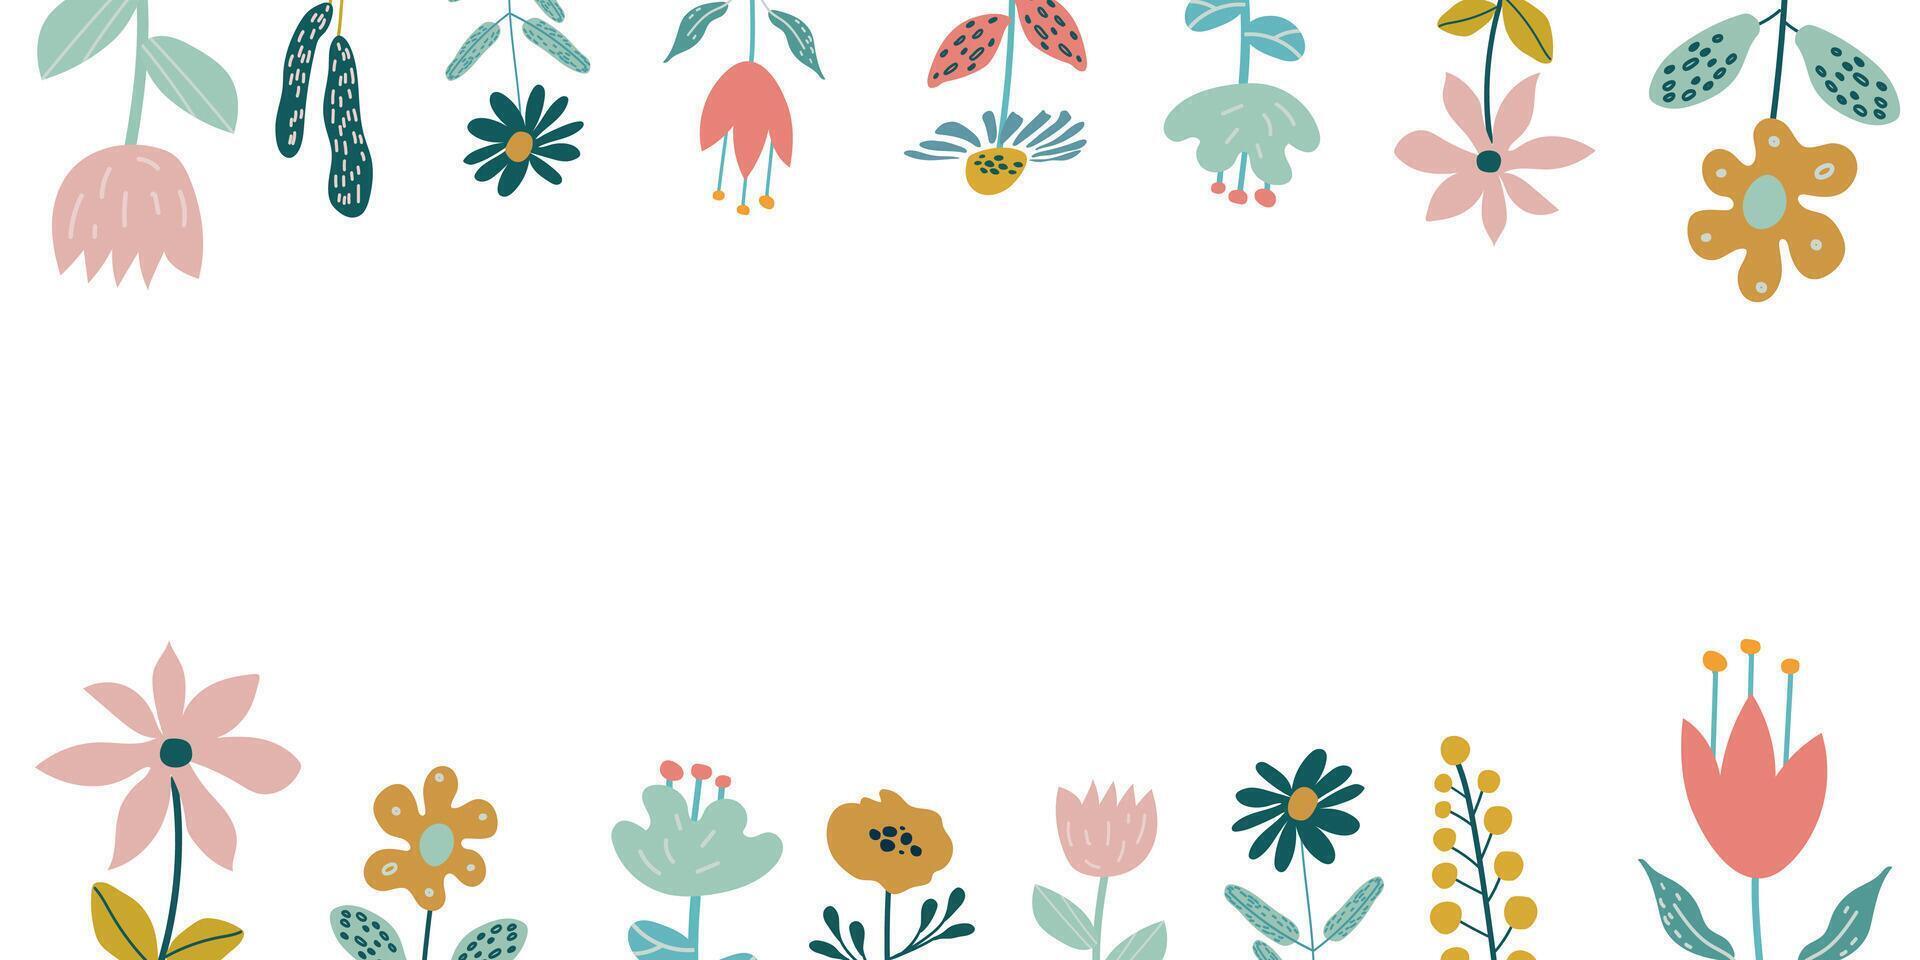 voorjaar achtergrond met bloemen in de omgeving van de rand en plaats voor tekst. vector illustratie van wilde bloemen in tekenfilm stijl. sjabloon voor kaarten, uitnodigingen, publicaties Aan sociaal netwerken.